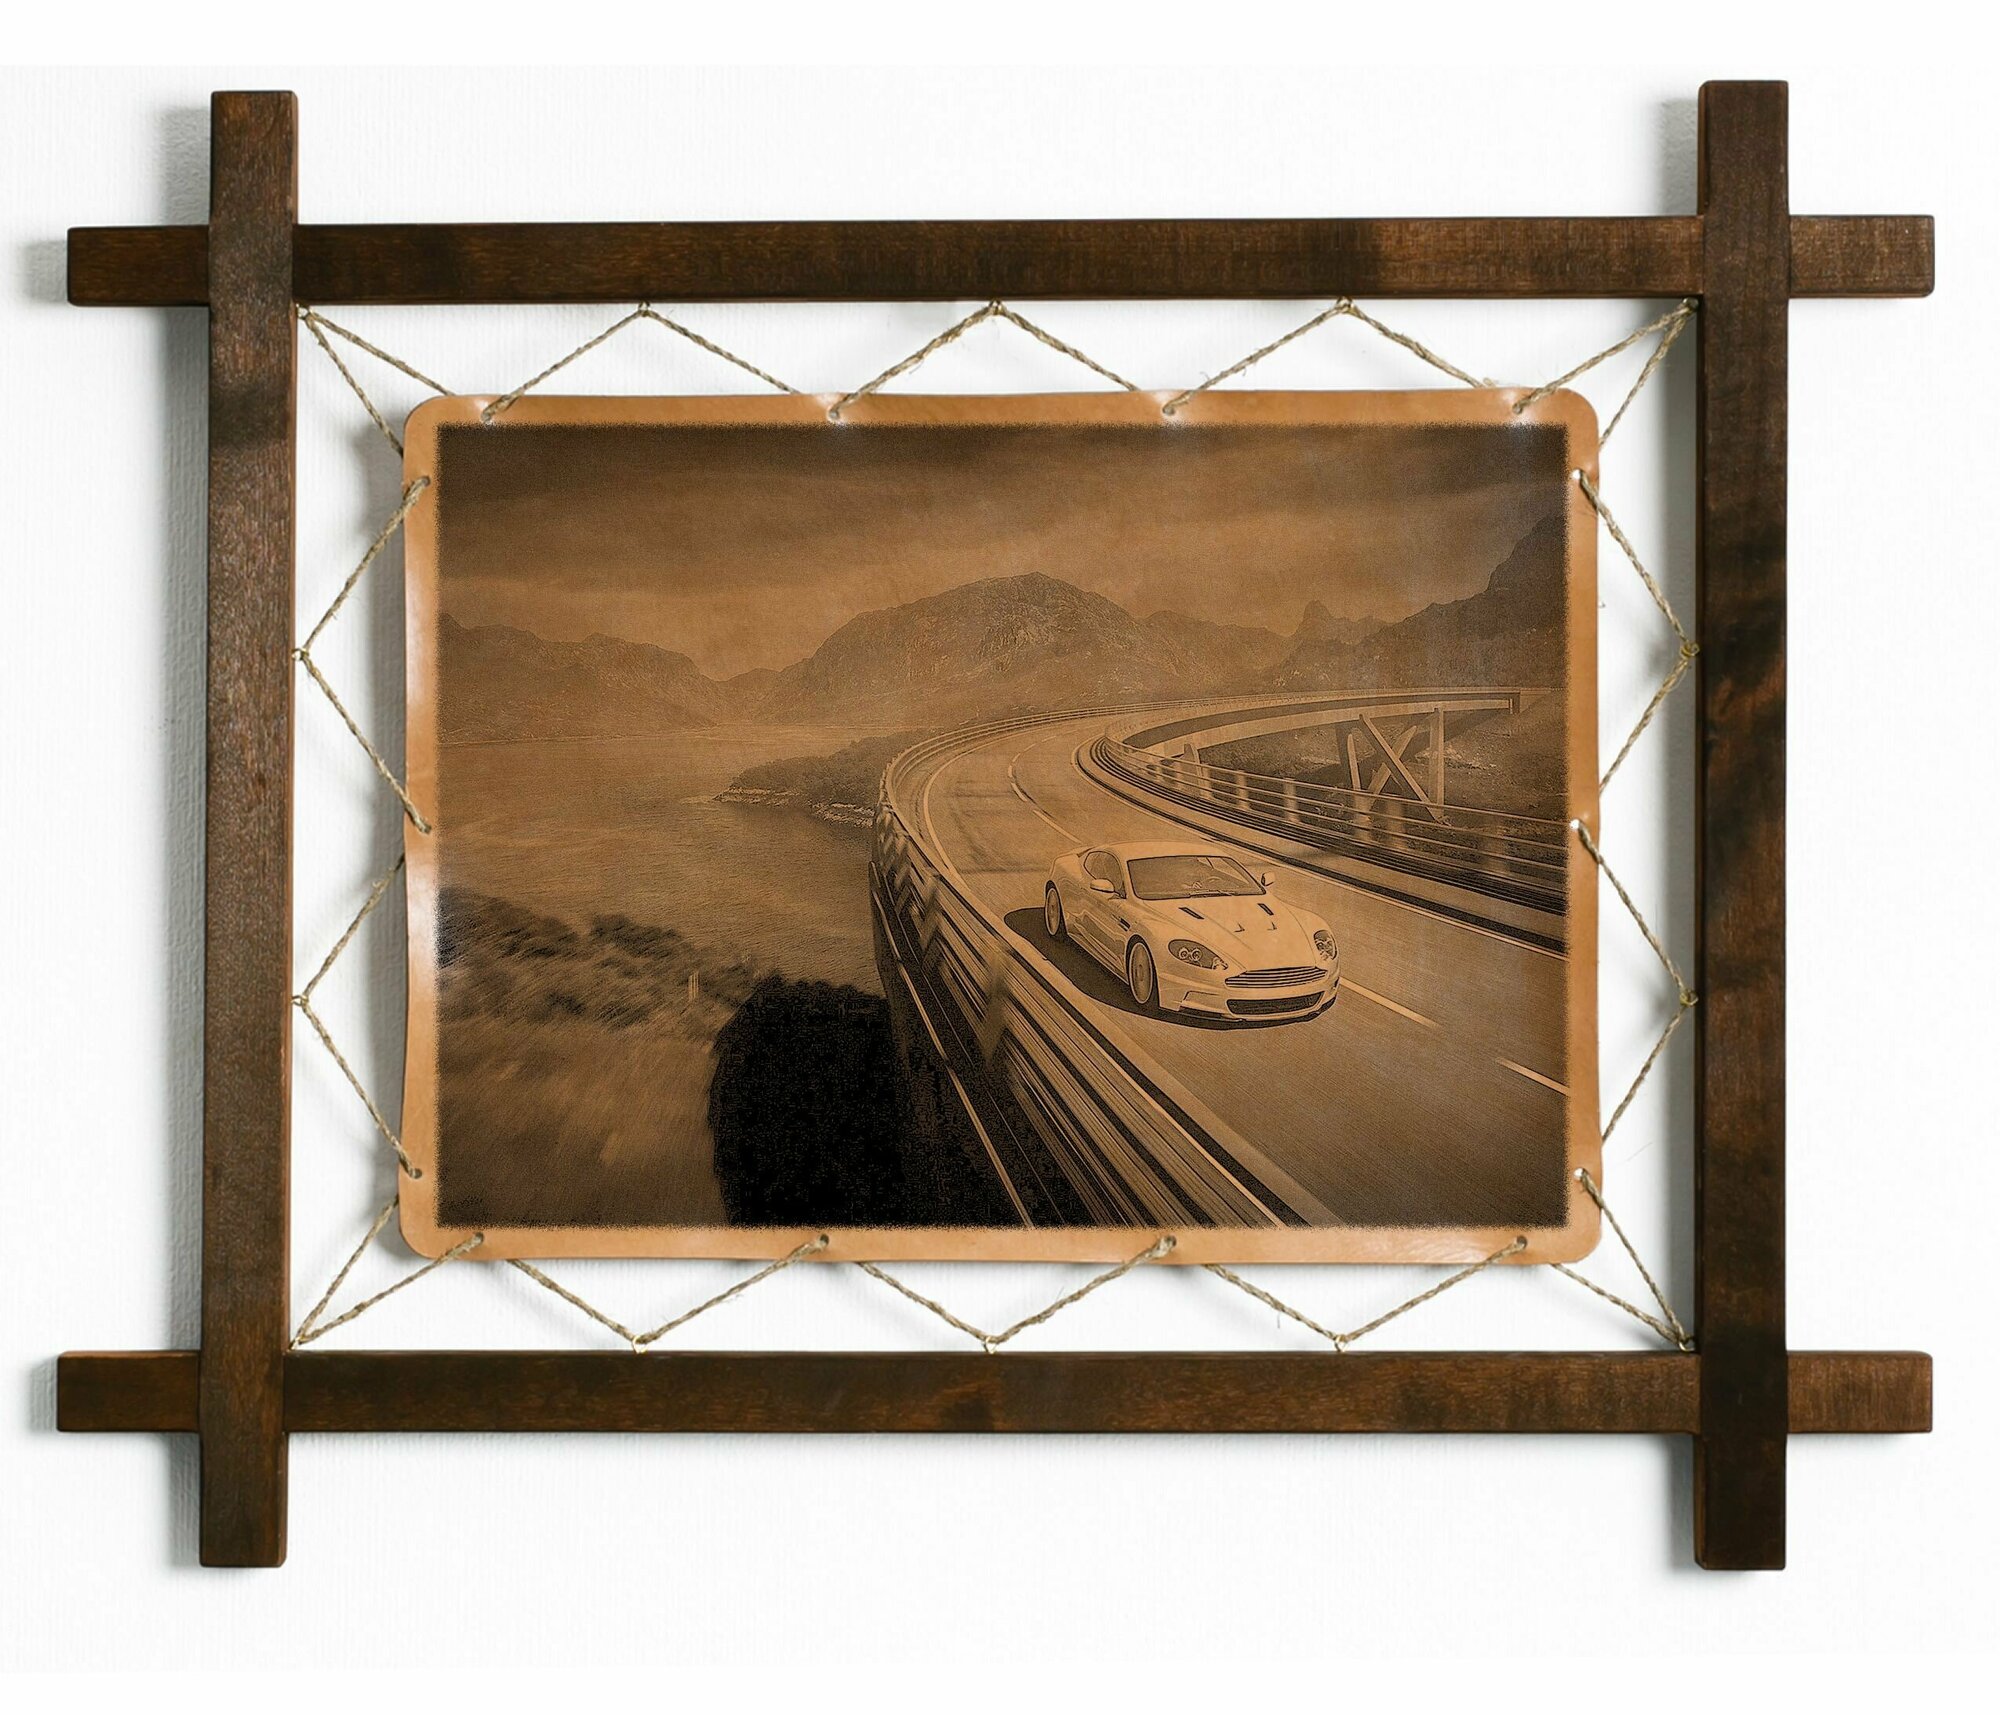 Картина Автомобиль, интерьерная для украшения и декора на стену в деревянной раме, подарок, натуральная кожа, BoomGift